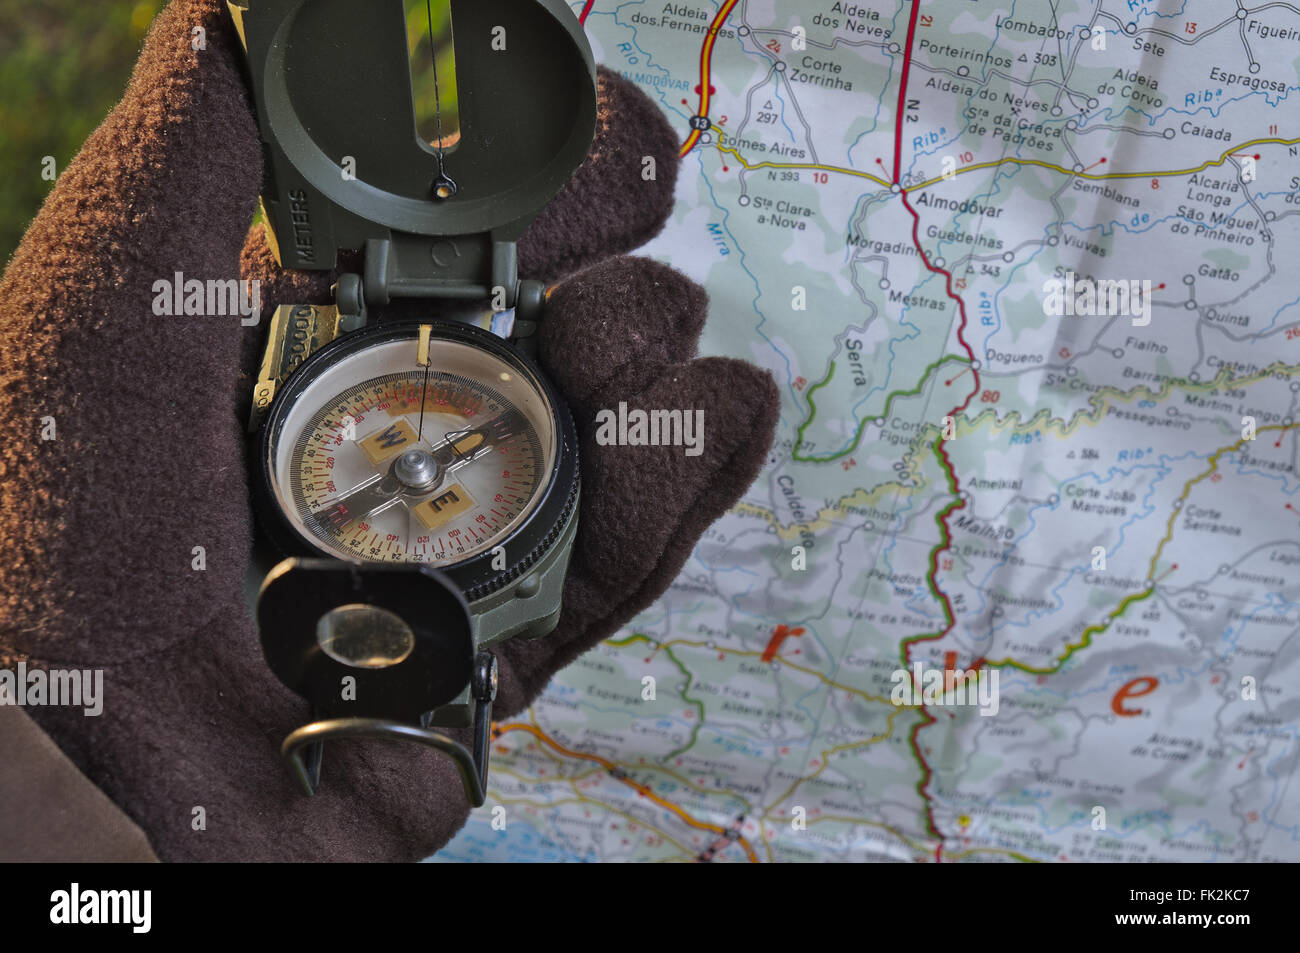 Cierre De Una Brújula Militar En Un Mapa De Rusia. Determinar La Dirección  De La Brújula Foto de archivo - Imagen de herramienta, objeto: 202431436